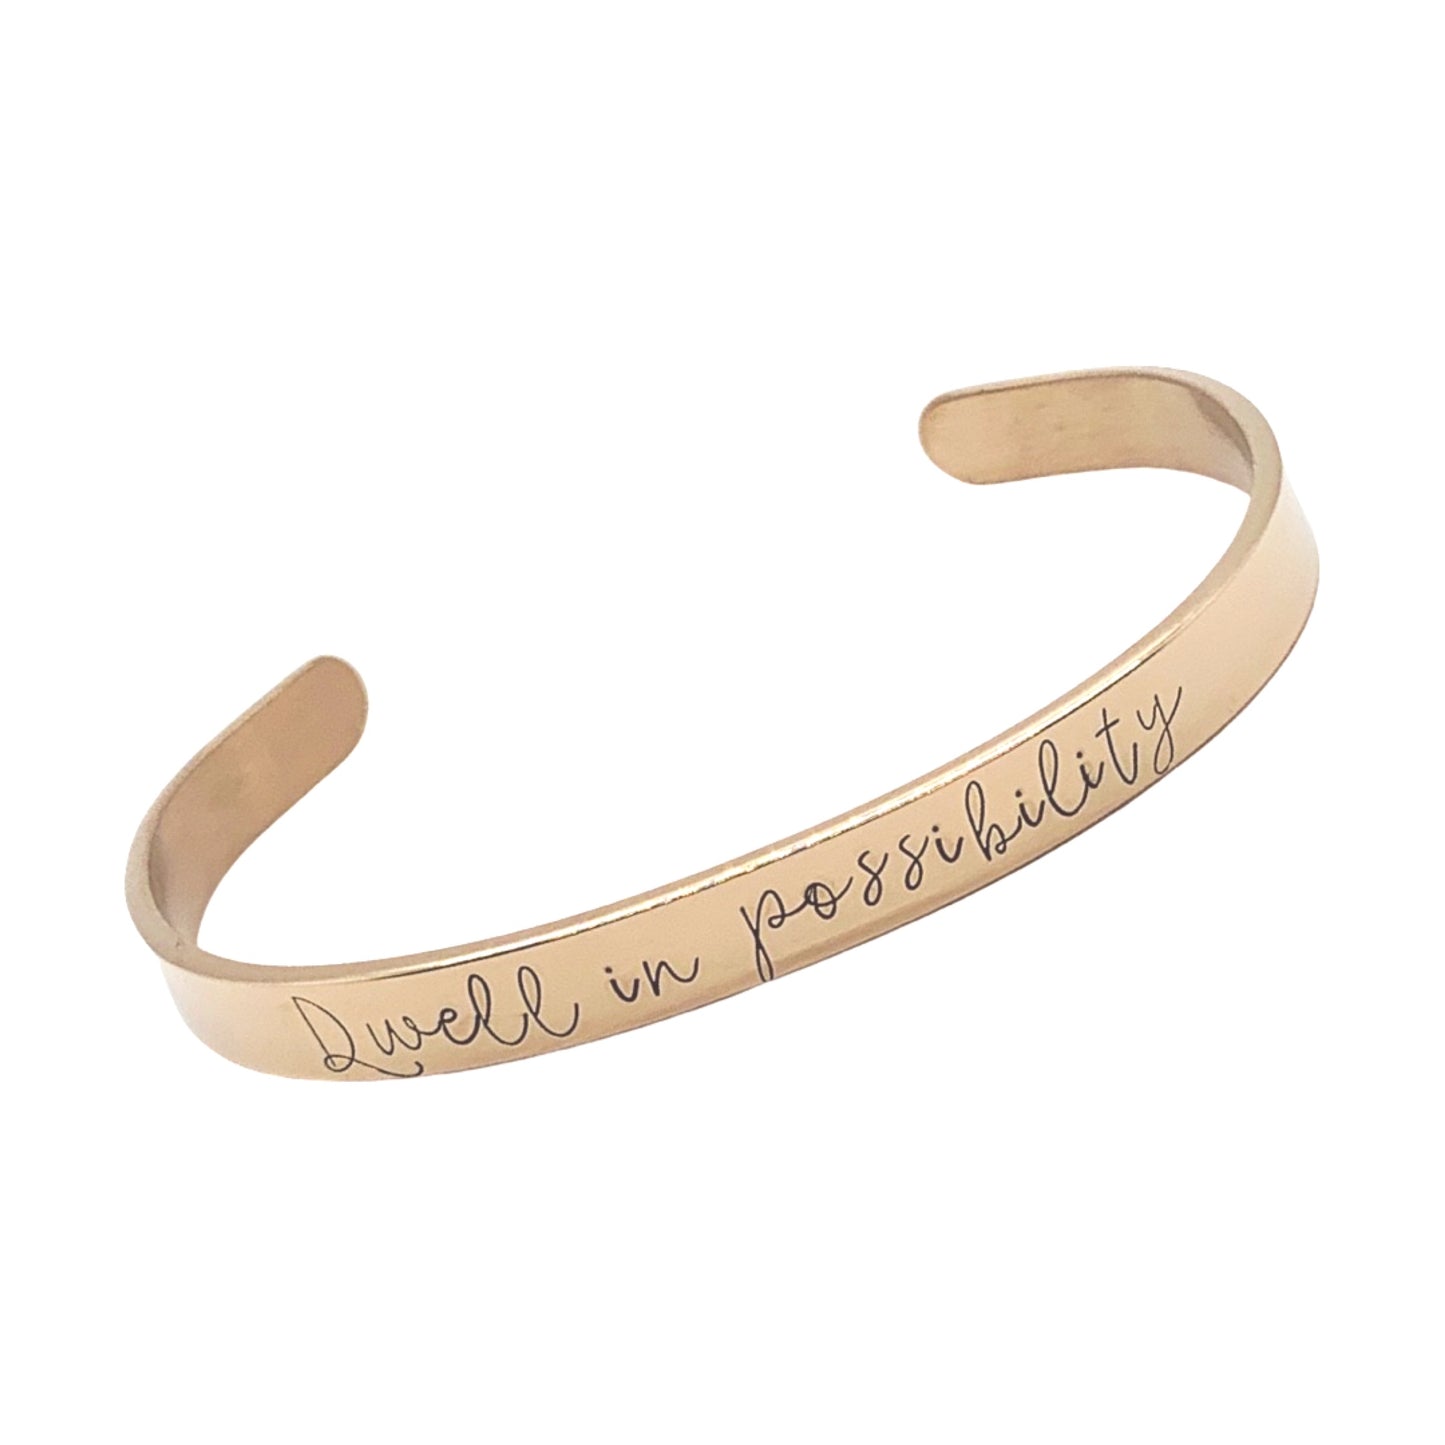 Dwell in possibility (Kennedy Ryan) - Cuff Bracelet